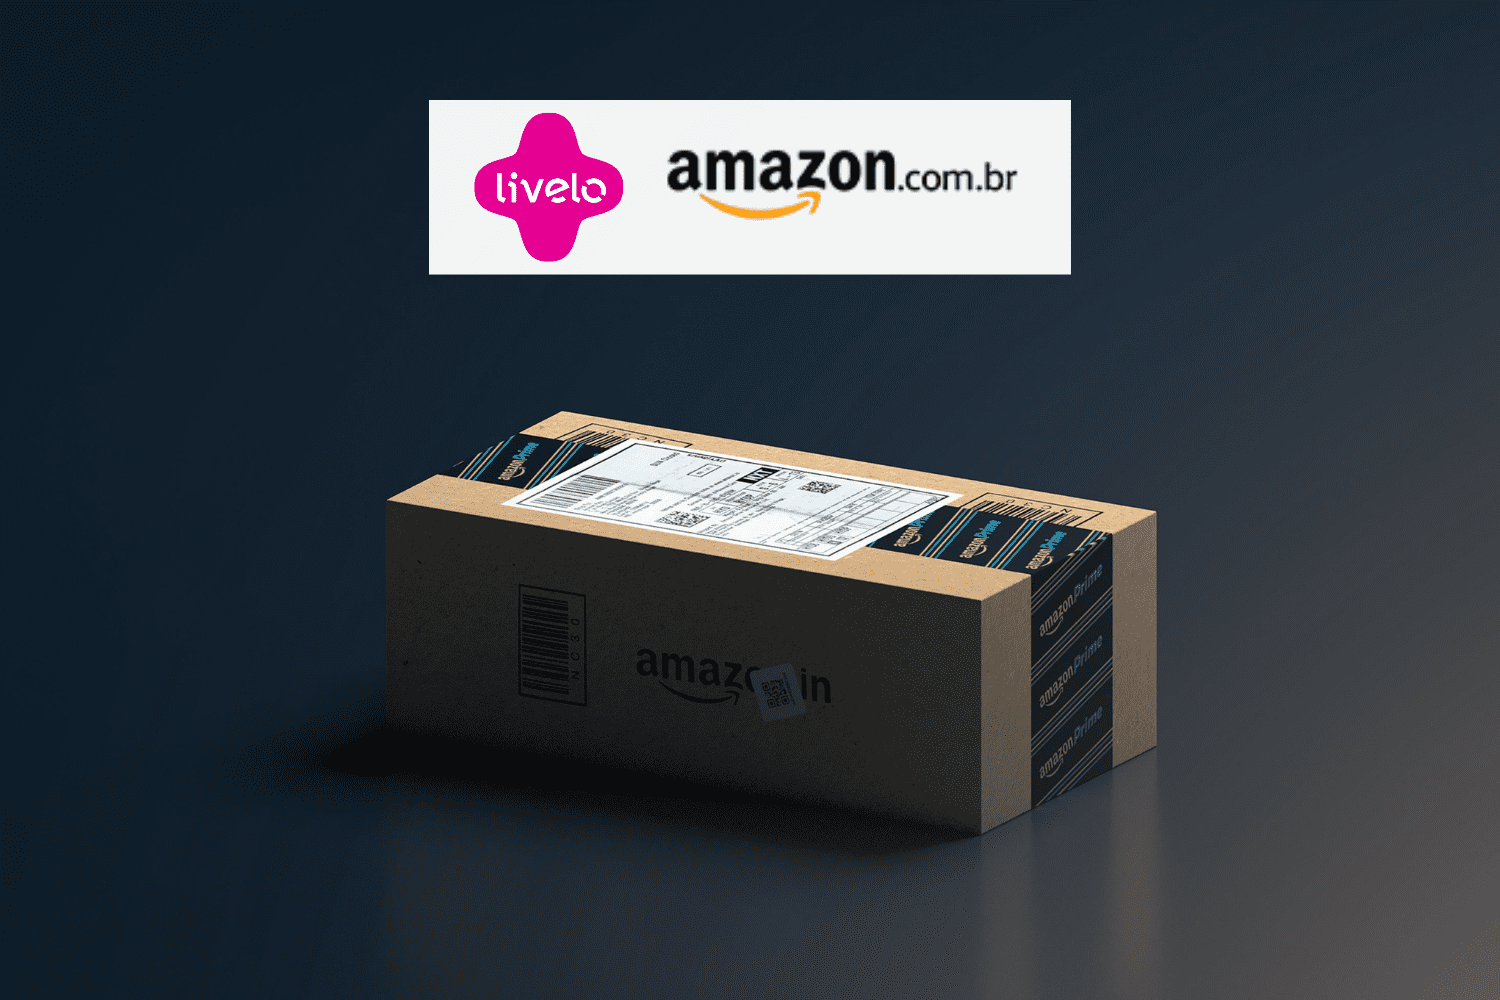 caixa de compras da Amazon com logo Livelo e Amazon 6 pontos Livelo